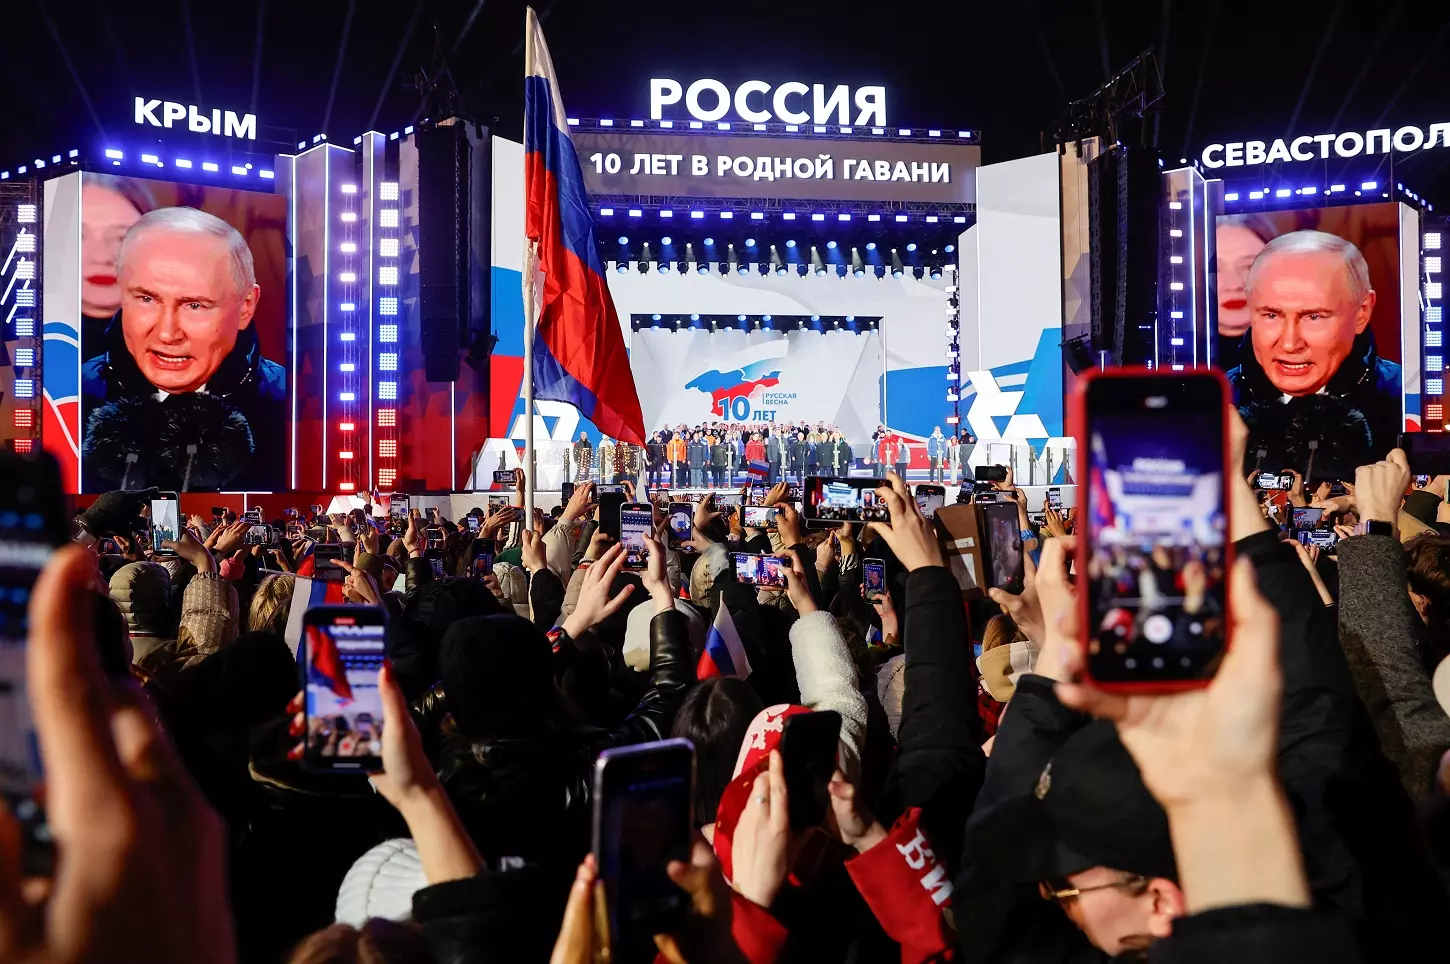 Unas pantallas gigantes muestran el rostro del presidente de Rusia, Vladimir Putin, en un acto en la Plaza Roja de Moscú, para conmemorar el décimo aniversario de la anexión rusa de Crimea de Ucrania, un día después de ser declarado de las recientes elecciones presidenciales. — Unas pantallas gigantes muestran el rostro del presidente de Rusia, Vladimir Putin, en un acto en la Plaza Roja de Moscú, para c / REUTERS/Stringer